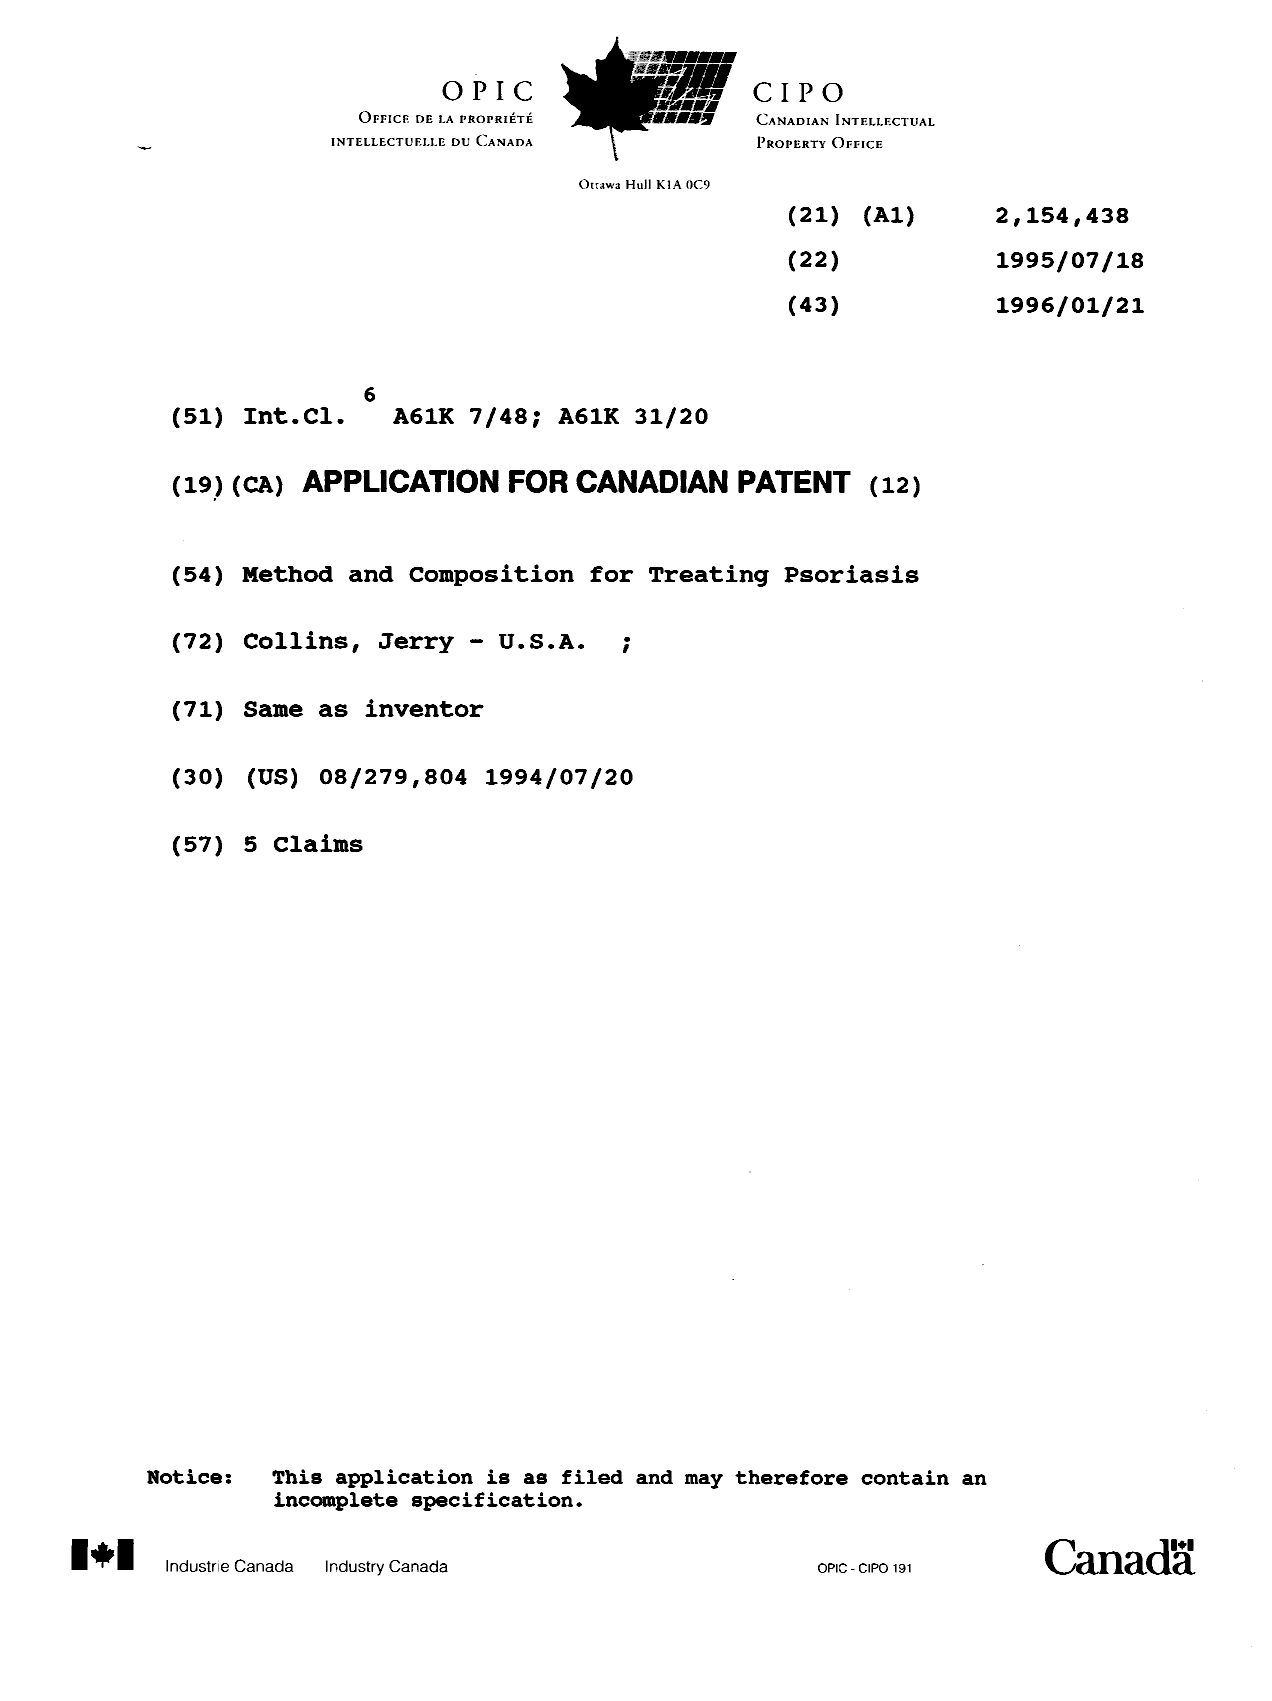 Document de brevet canadien 2154438. Page couverture 19960313. Image 1 de 1